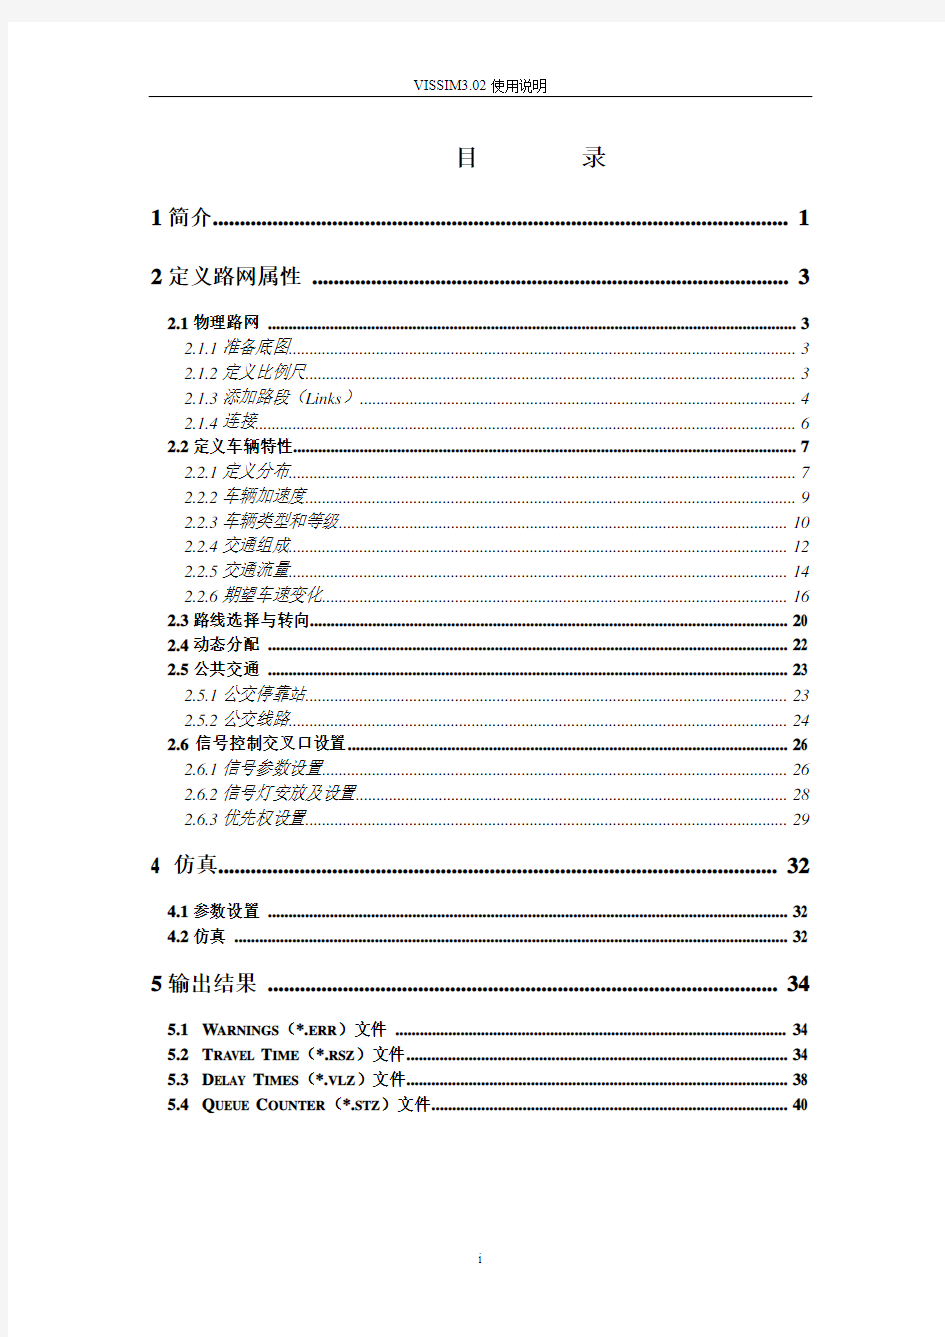 VISSIM3.7中文使用手册(使用说明)